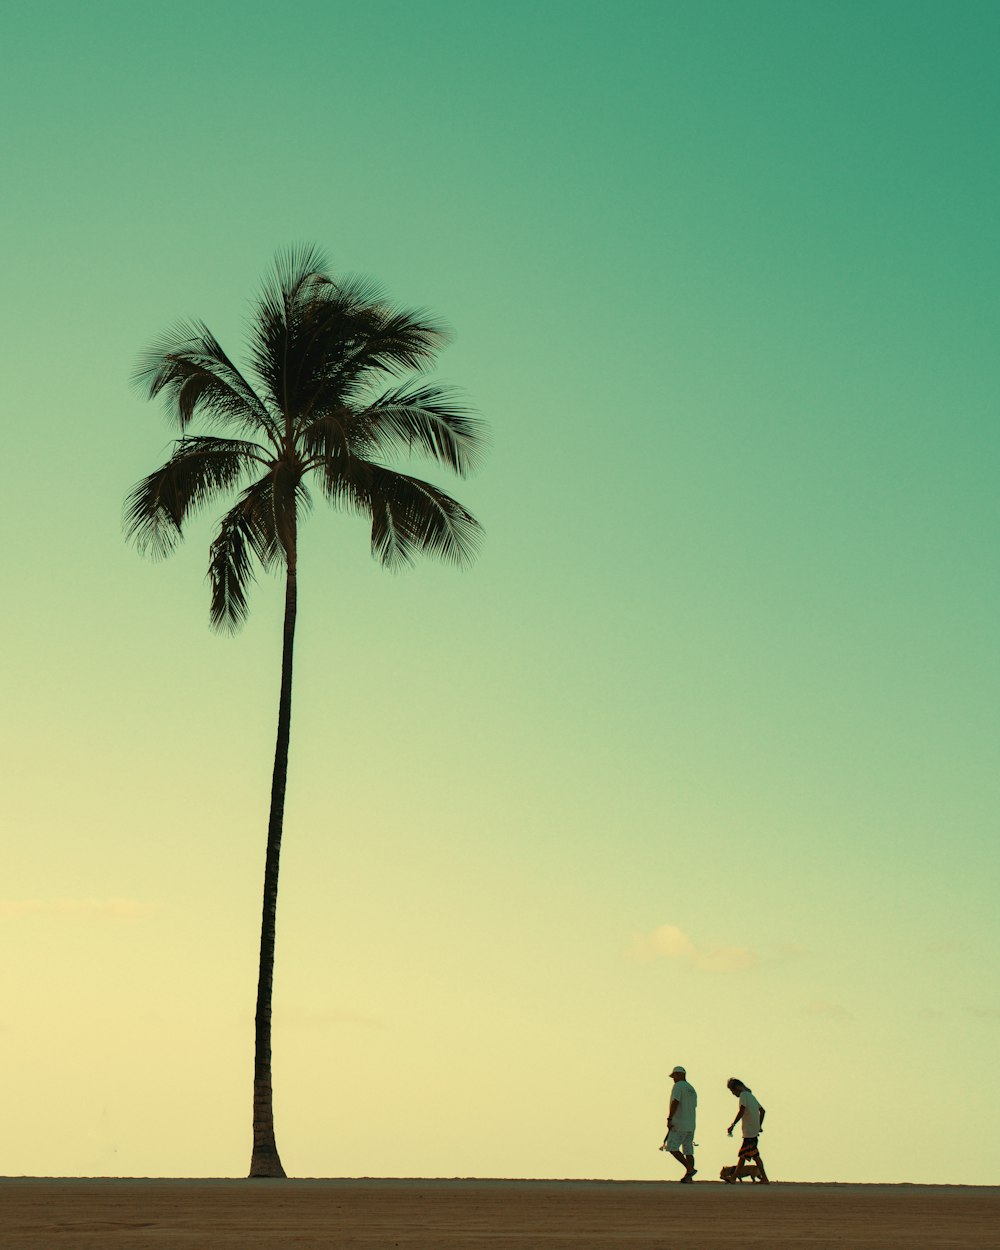 Un couple de personnes marchant sur une plage à côté d’un palmier